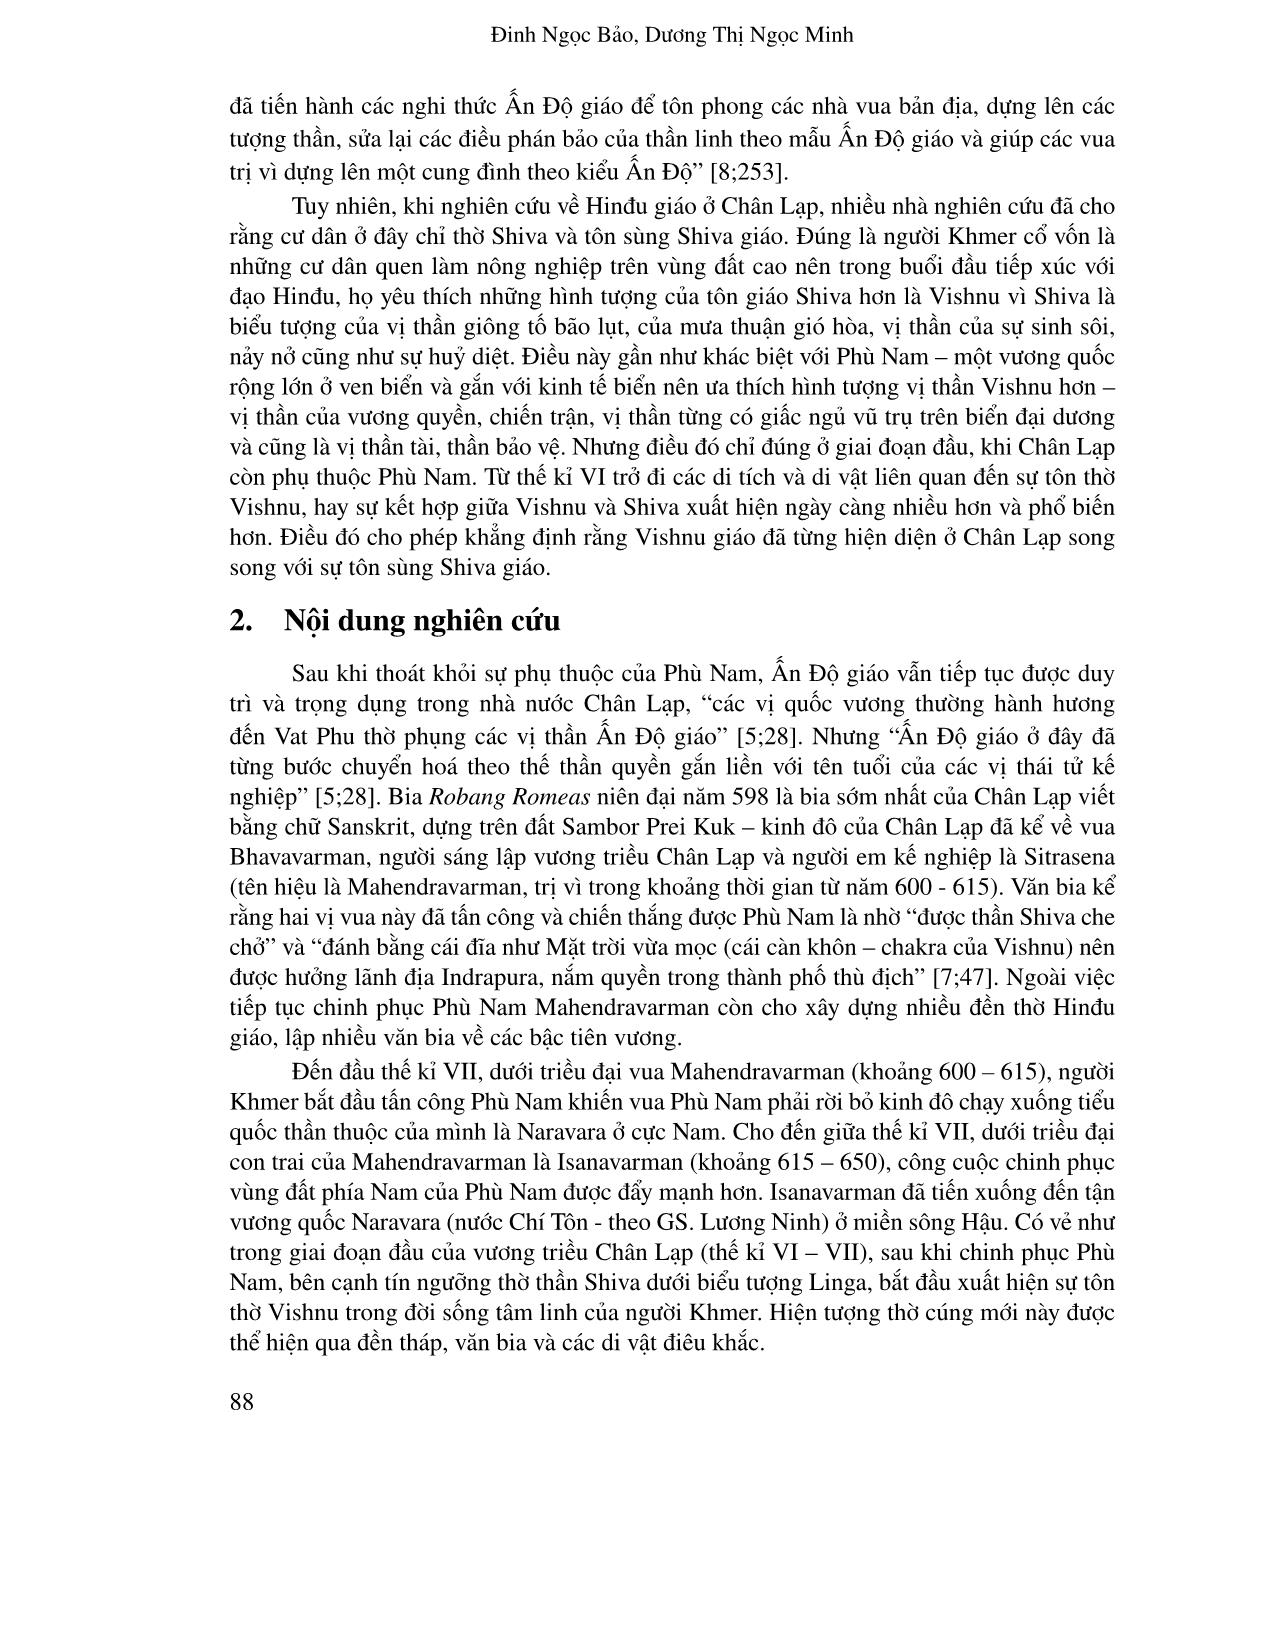 Vishnu giáo ở Chân Lạp thế kỉ VI-VII trang 2